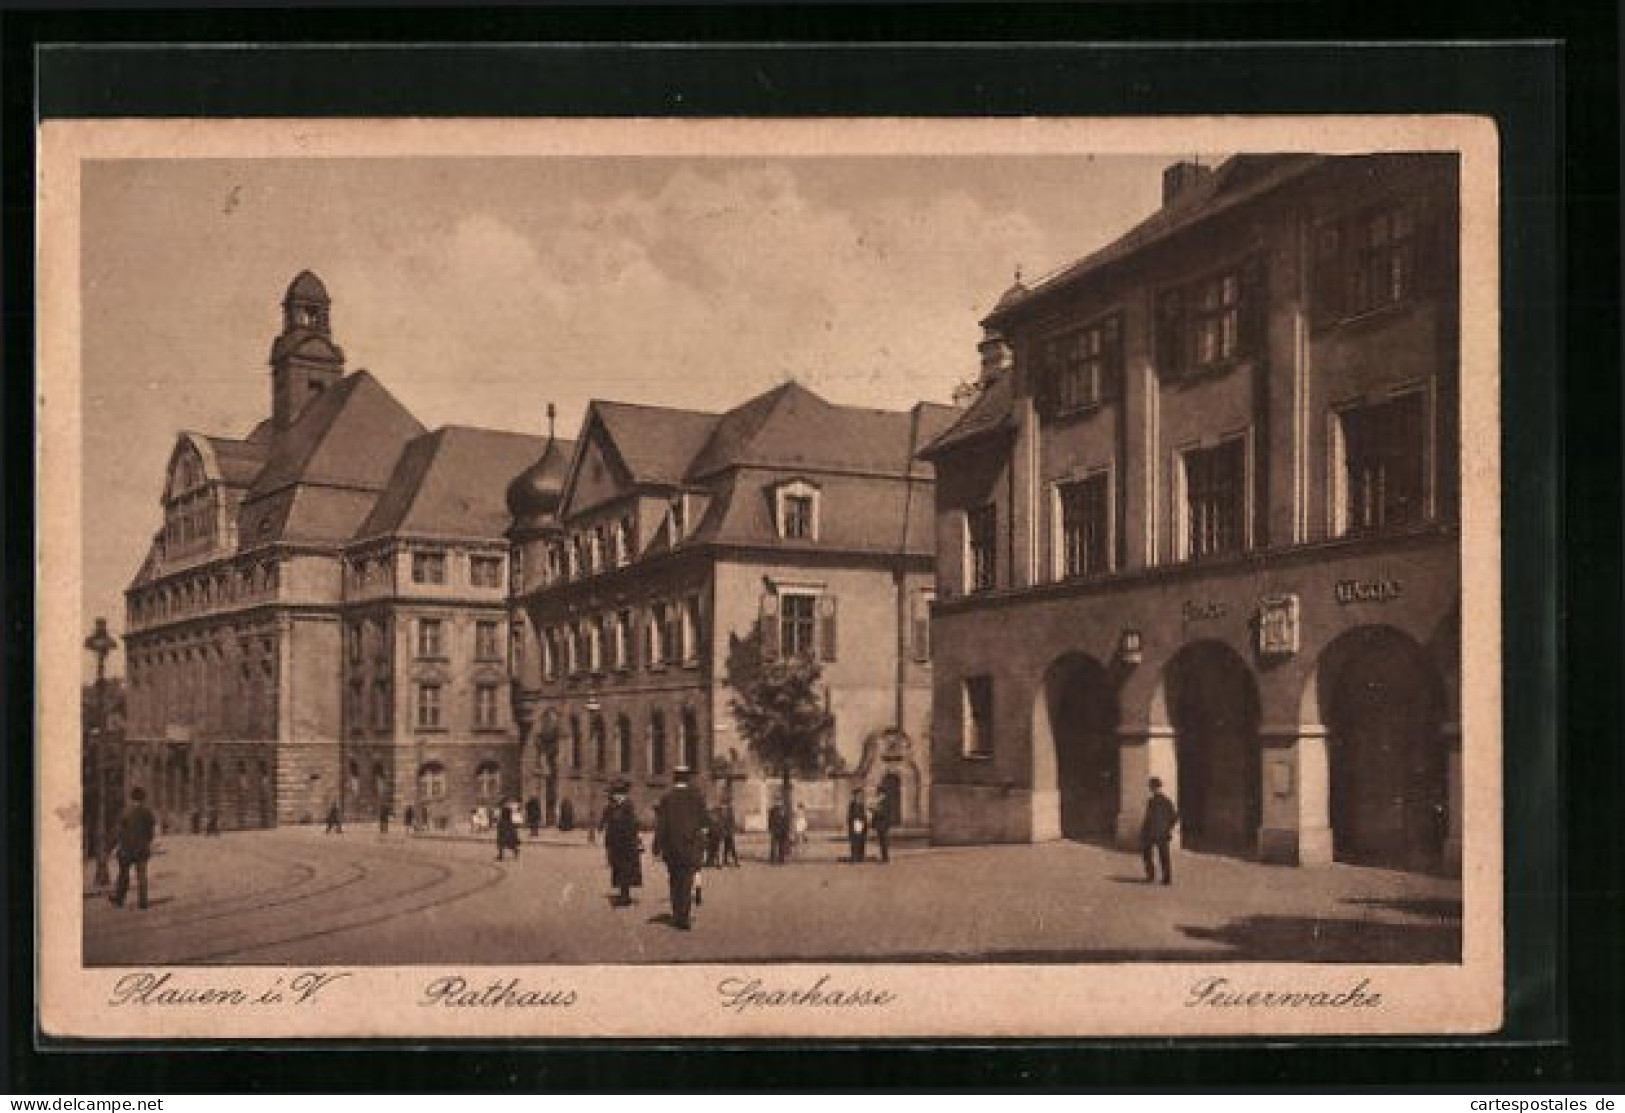 AK Plauen I. V., Rathaus, Sparkasse, Feuerwache  - Brandweer